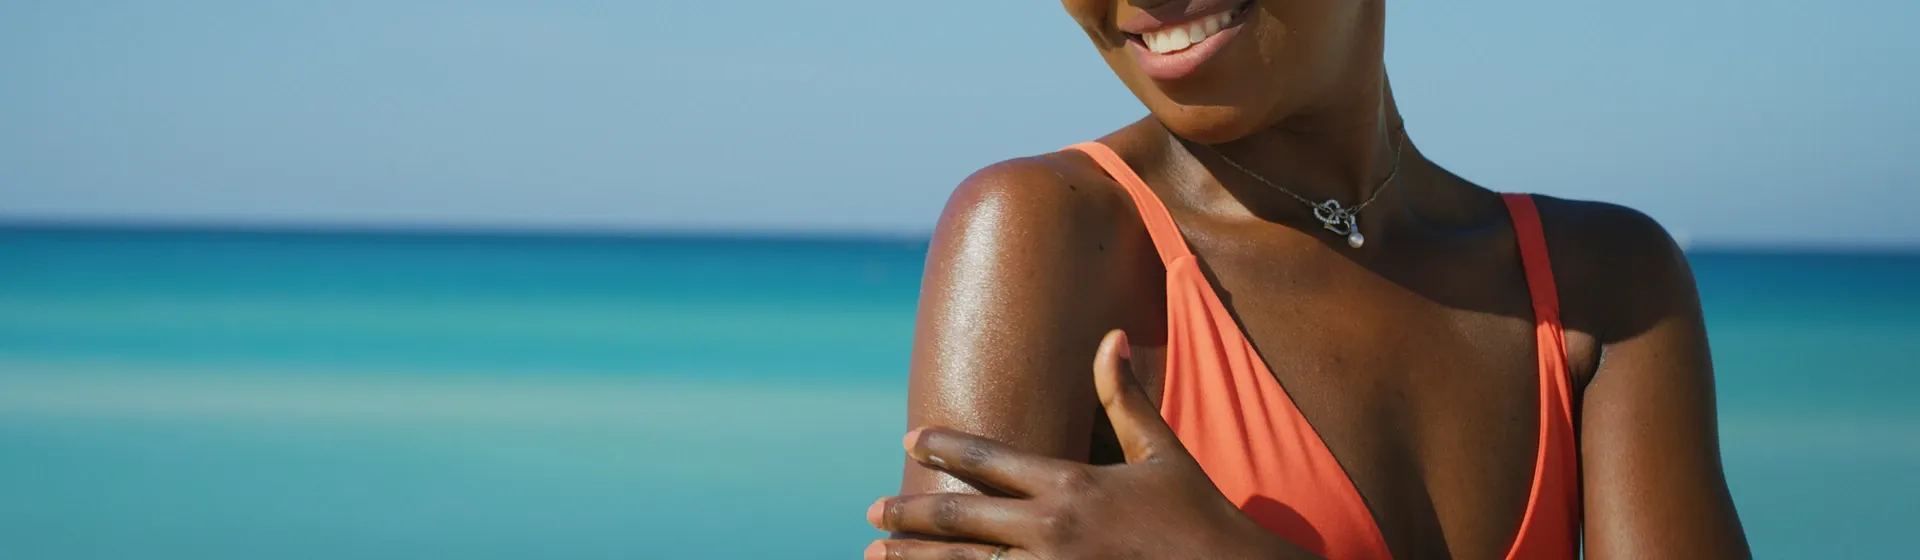 Pós-sol: 6 melhores opções para cuidar da pele bronzeada